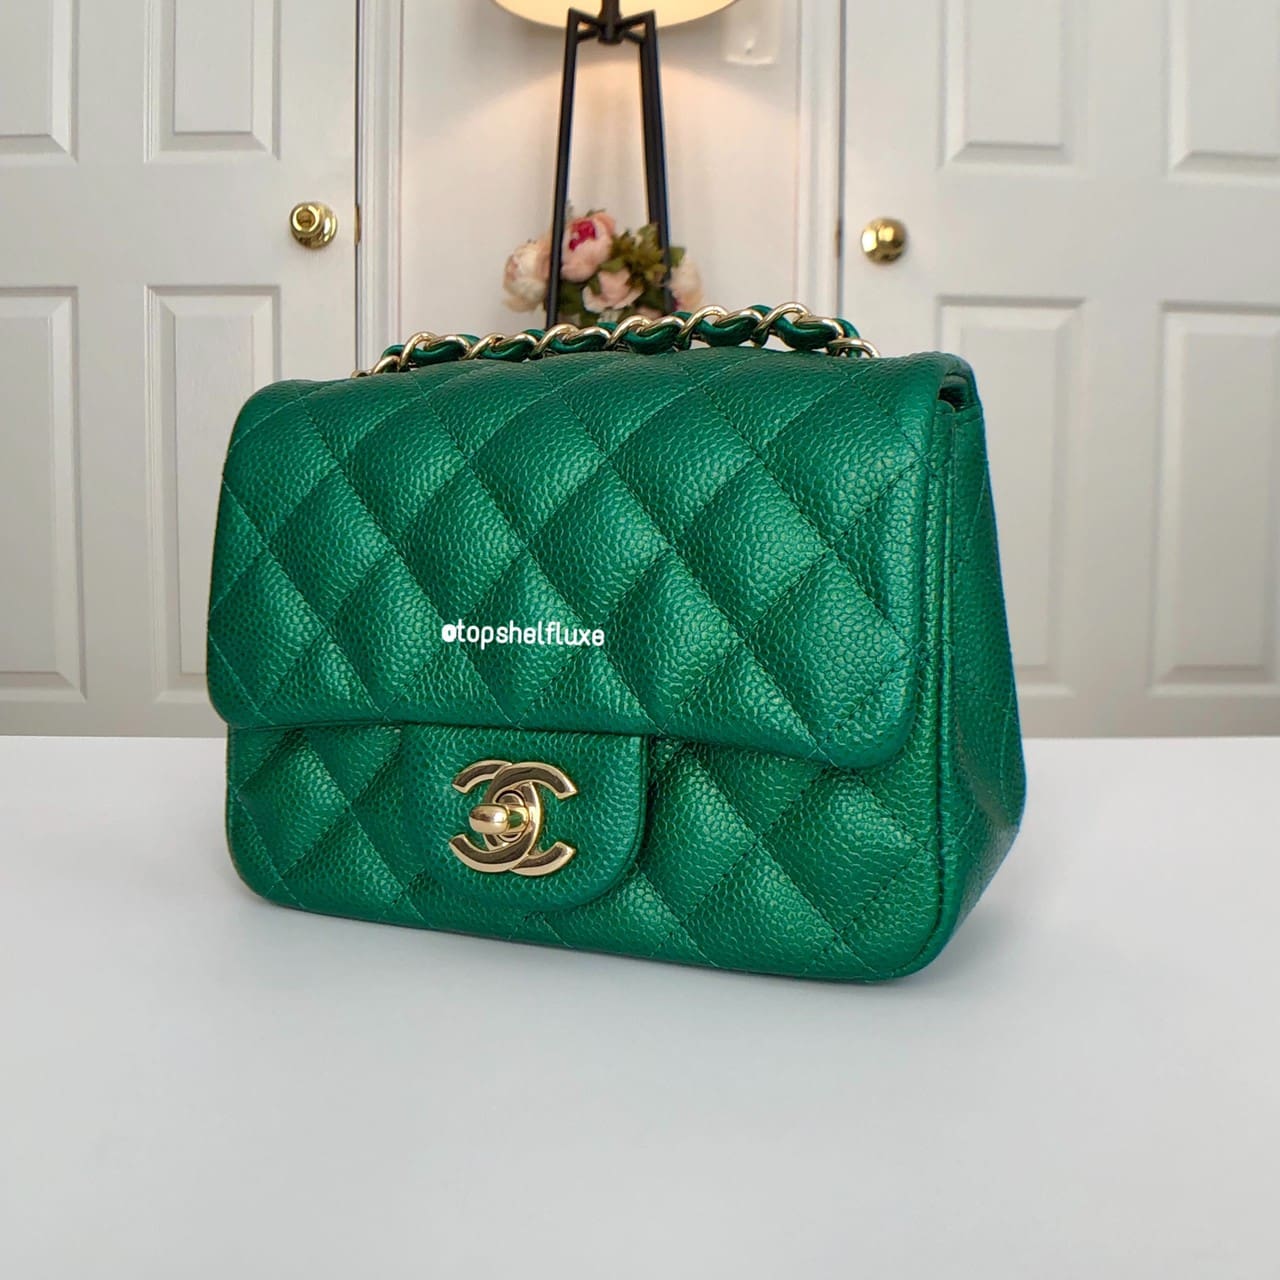 Chanel Classic Mini Square, 18S Emerald Green Cavwith Gold